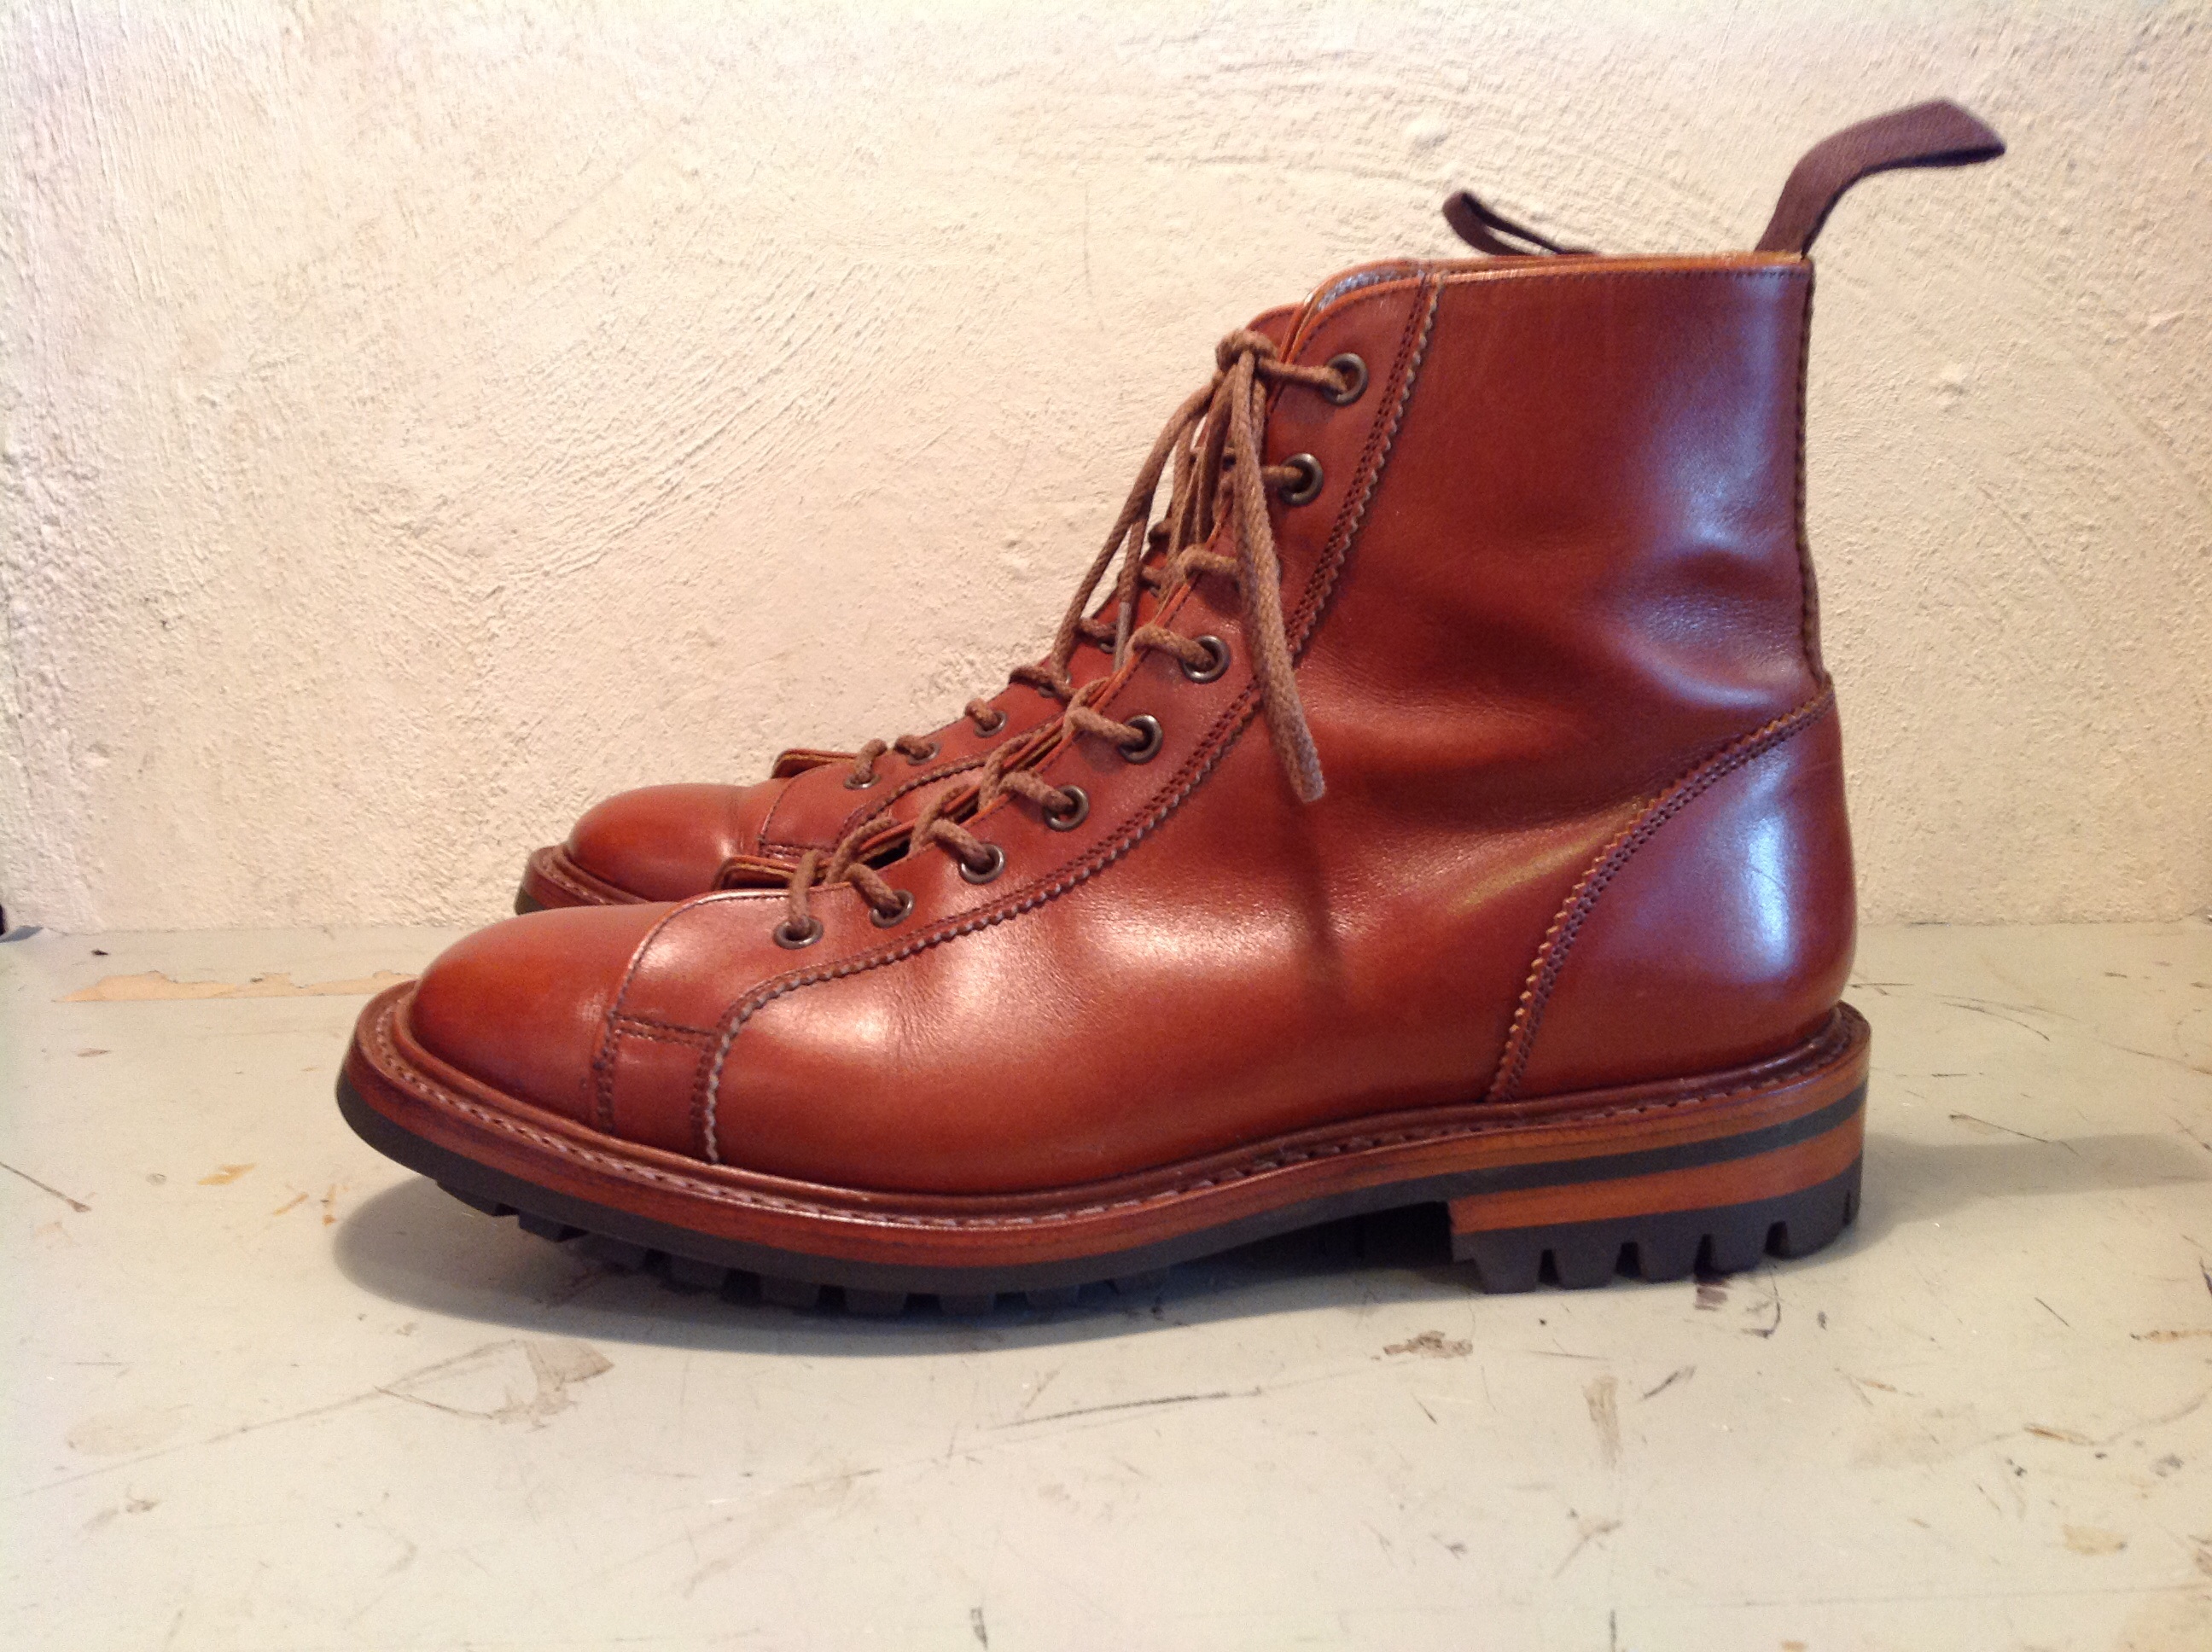 トリッカーズ モンキーブーツ グッドイヤーソール | 吉祥寺のオーダー靴と靴修理のお店 「tonearm」トーンアーム